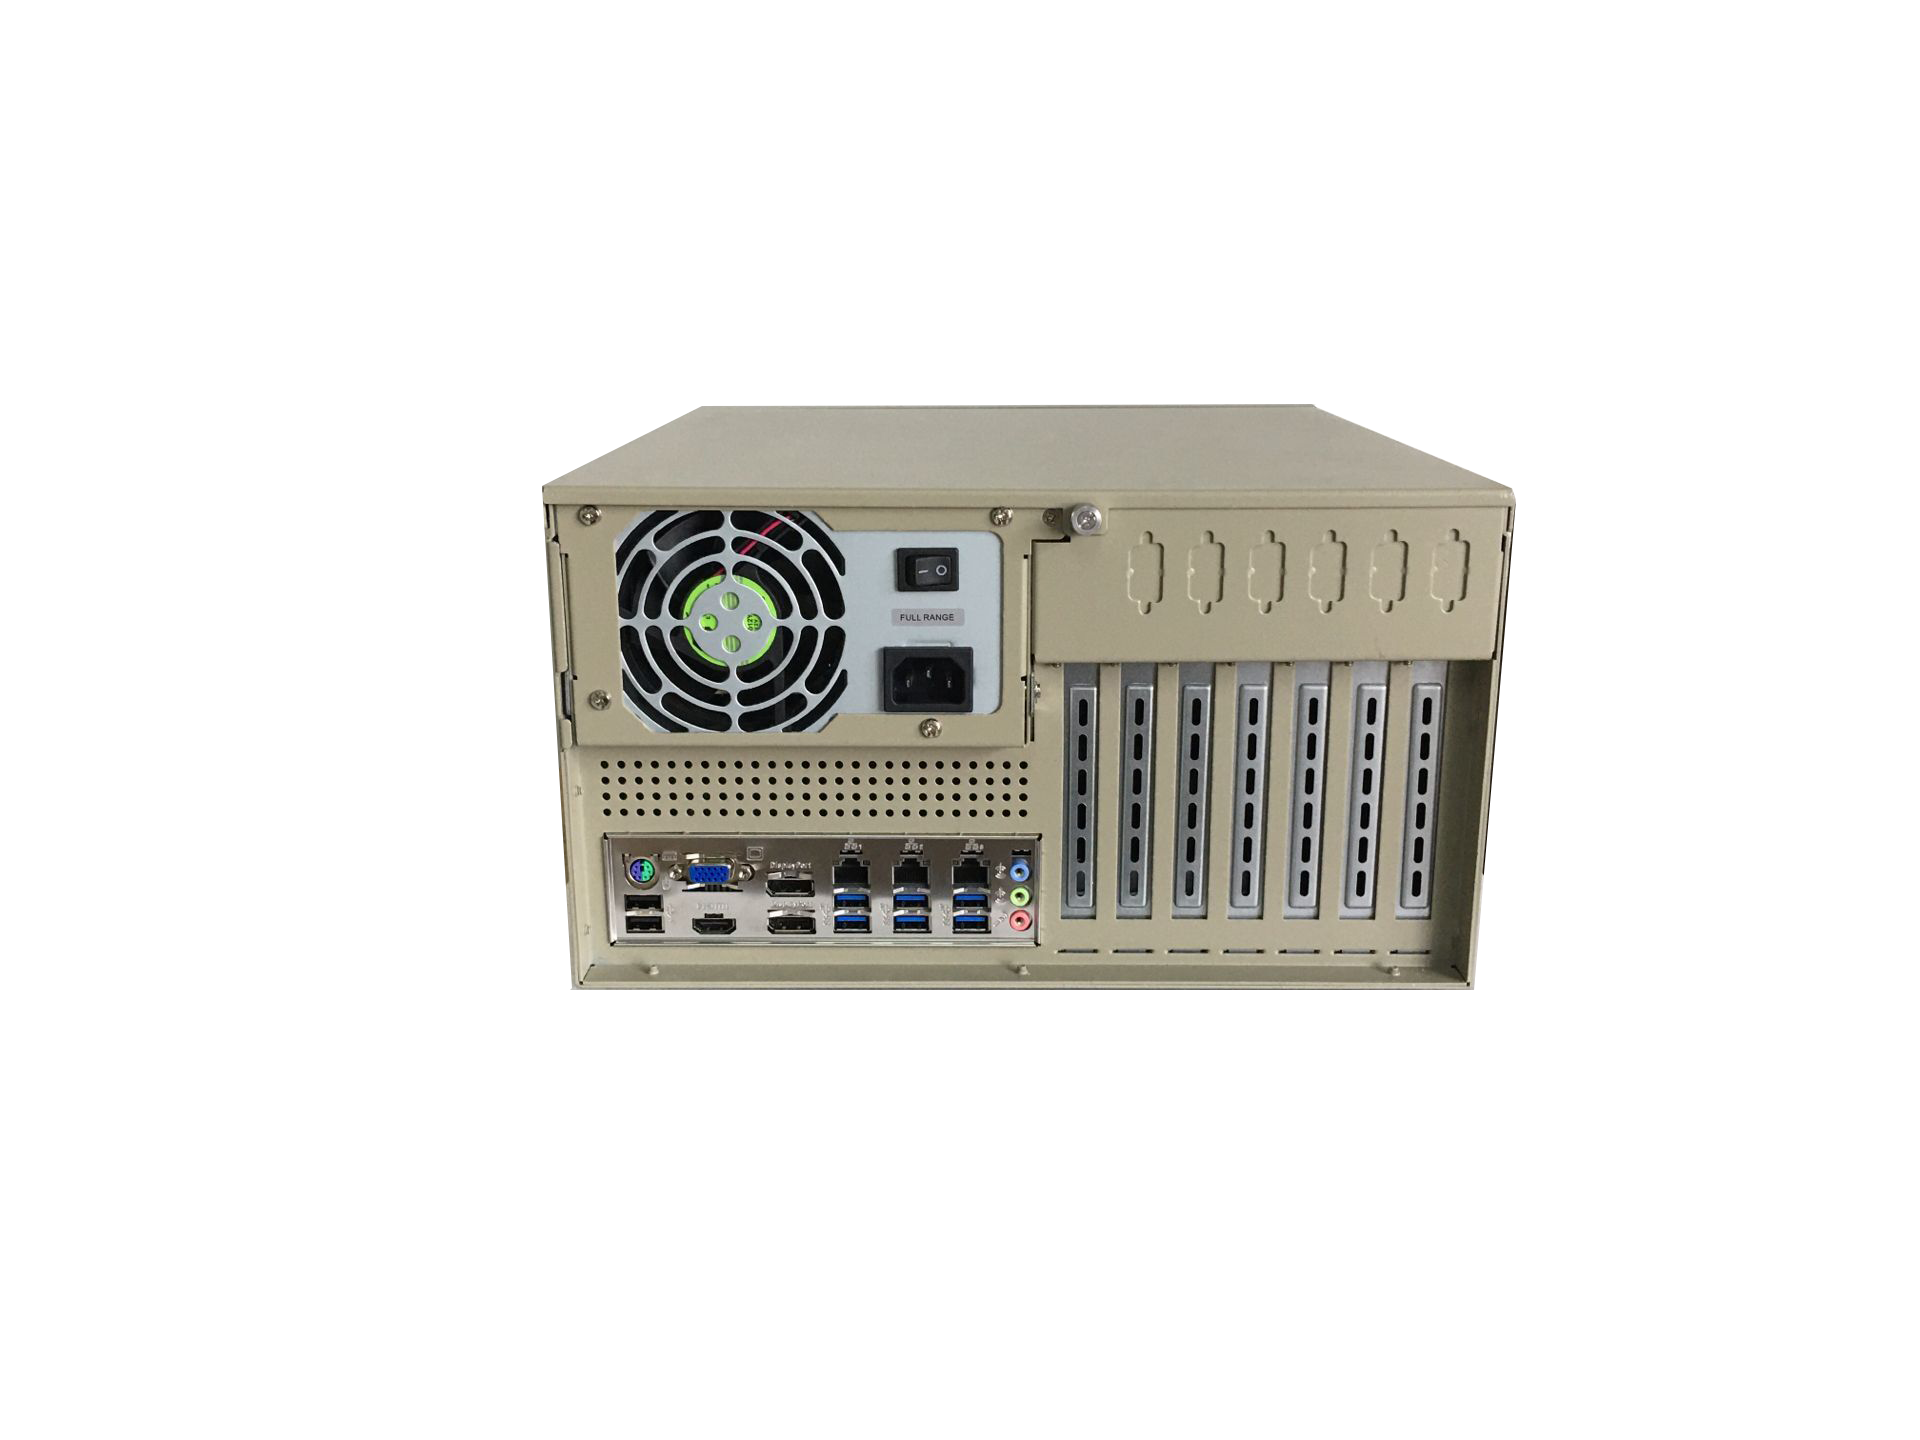 IPC-608-Q370 V1.0壁挂式7槽位工控机英特尔 Q370芯片组多网口10串口13USB多显示嵌入式桌式安装工业计算机